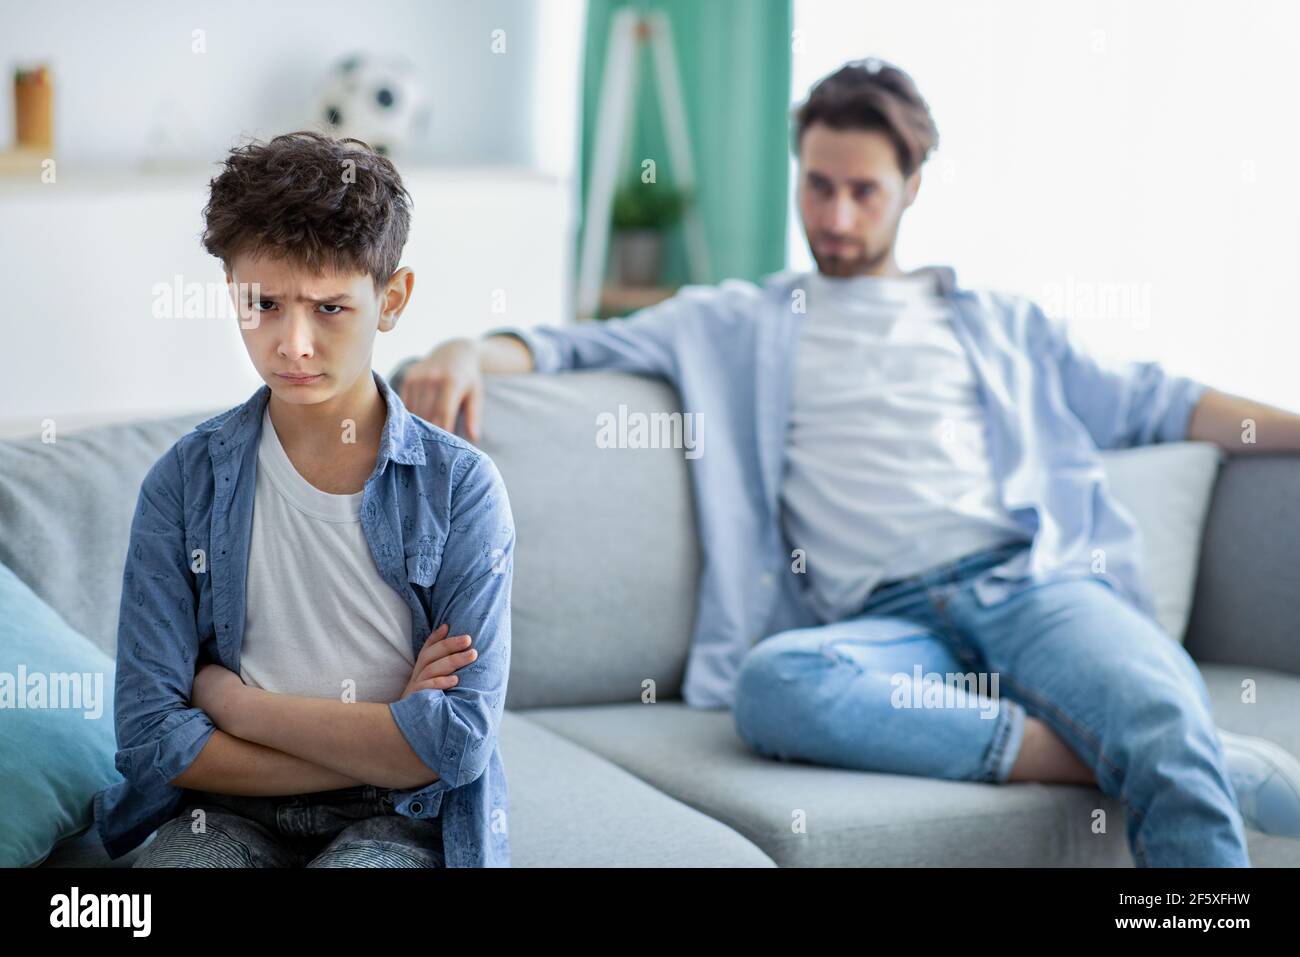 Familiengenerationen Konflikt. Verärgert Junge und Vater nicht reden nach Streit, Sohn und Vater sitzen getrennt auf der Couch Stockfoto